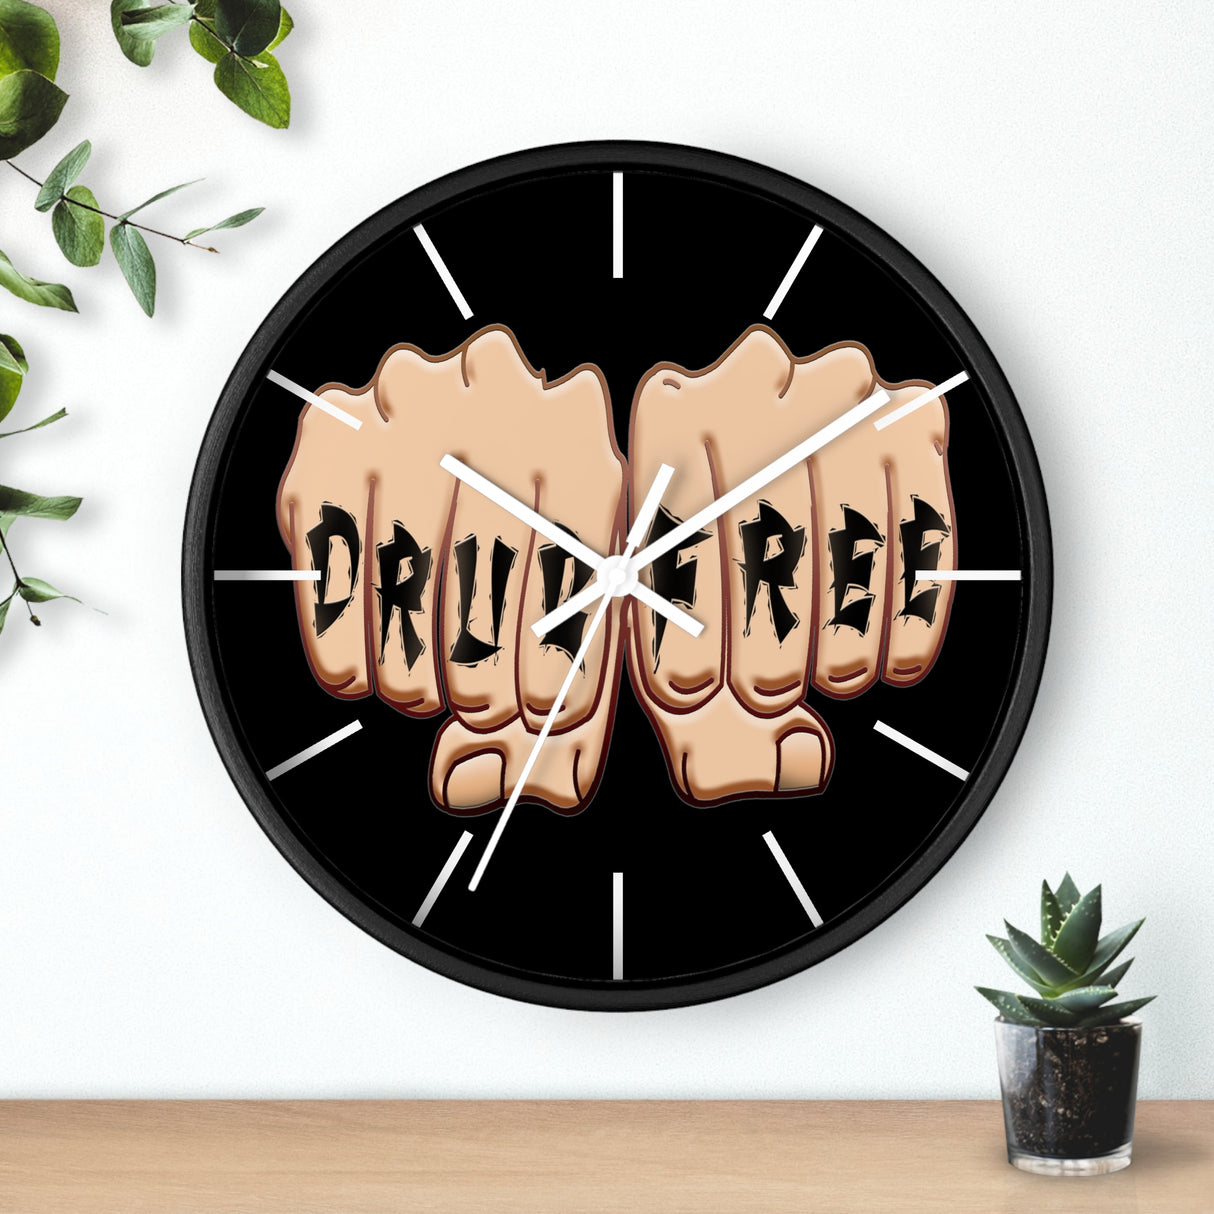 Drug Free Fist Wall clock